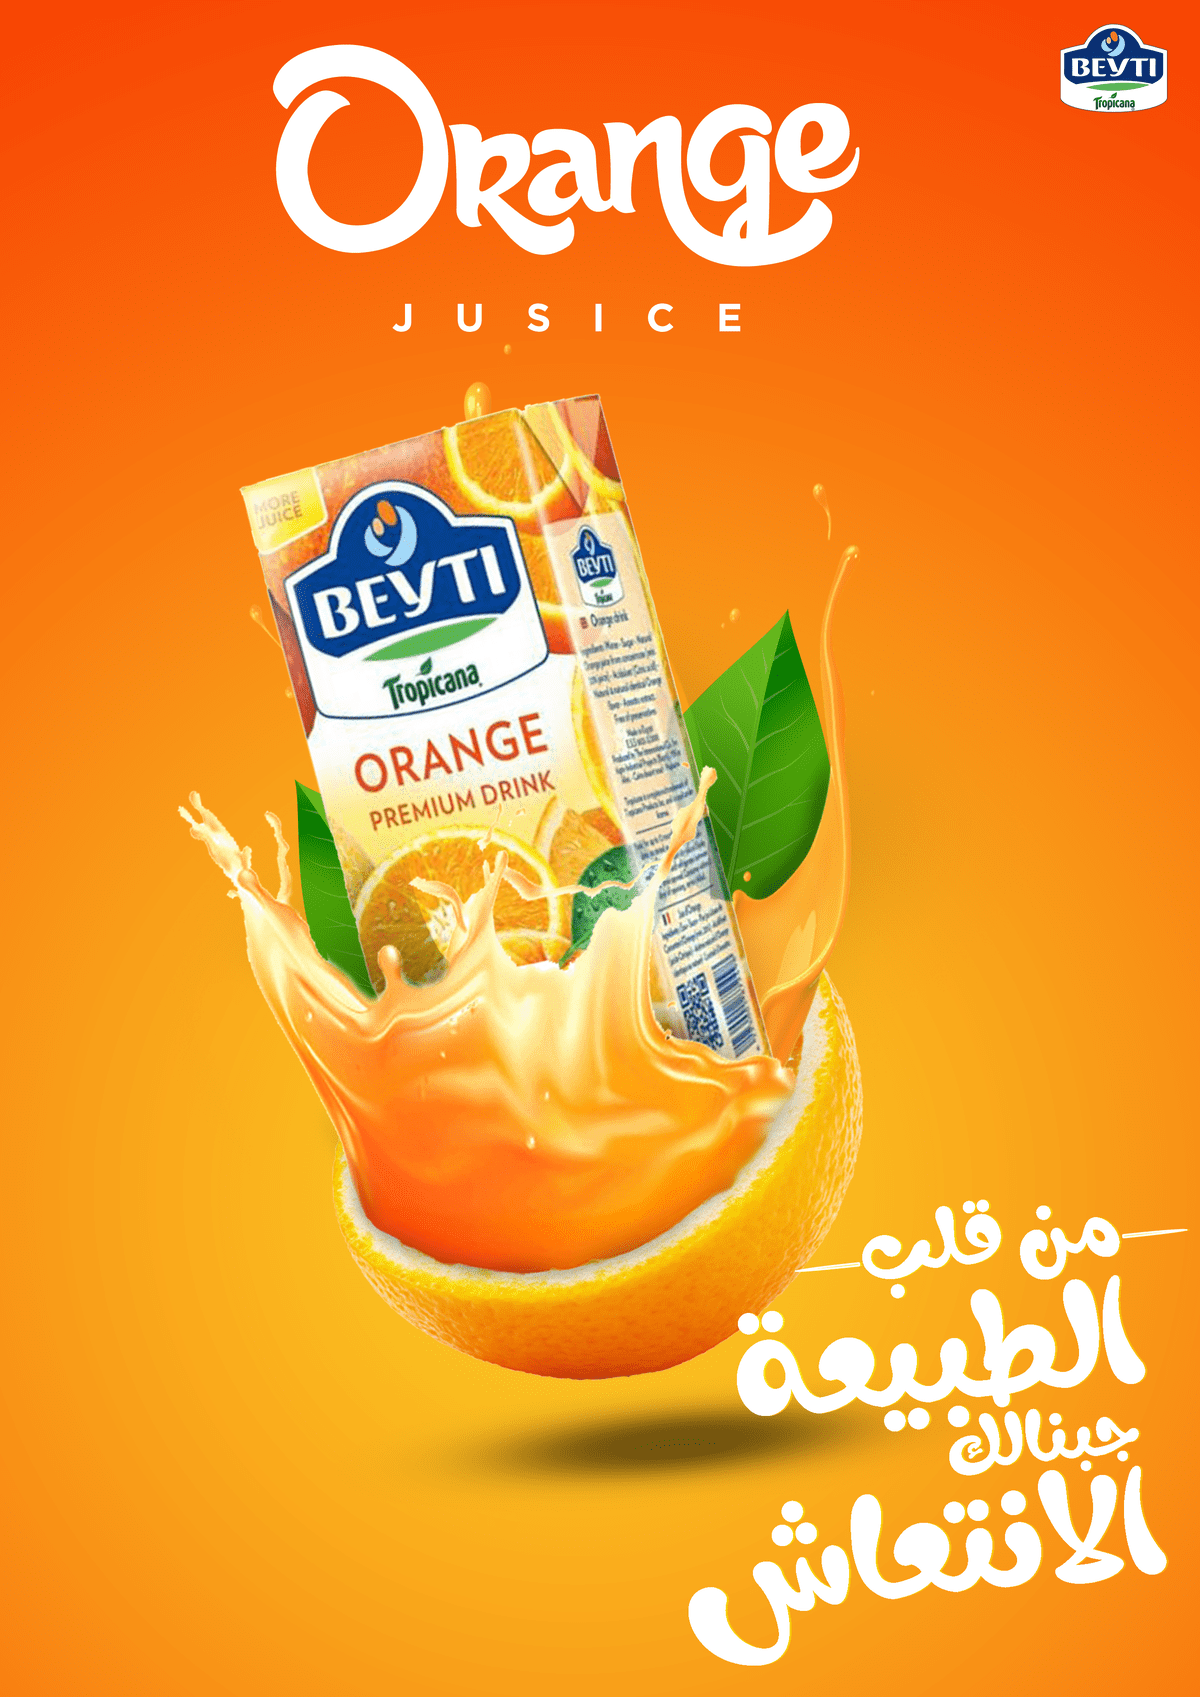 Orange_Juice_A4_Poster_Design